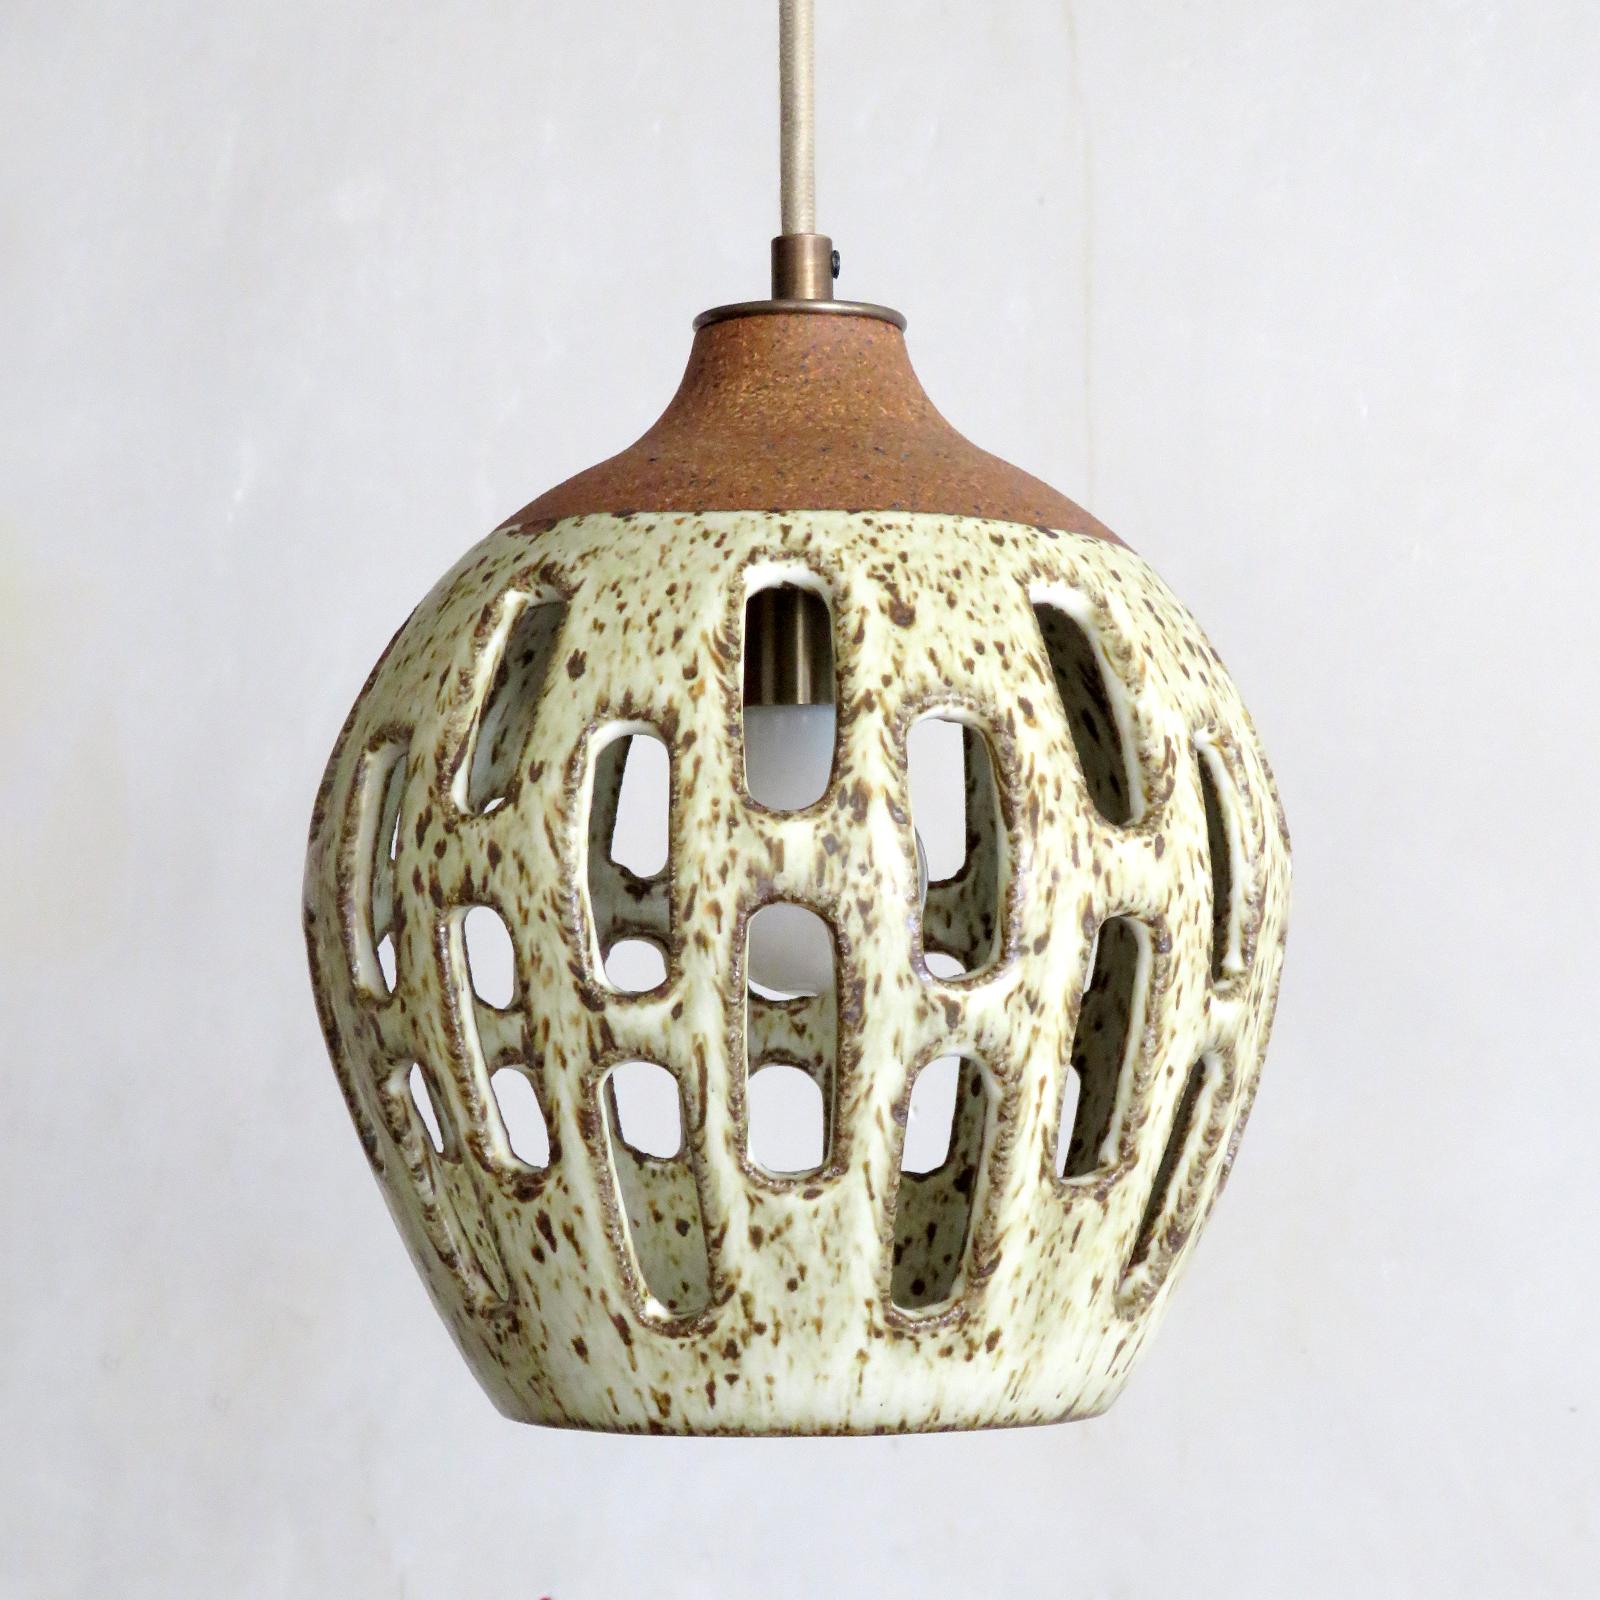 Merveilleuse lampe suspendue en céramique No. 1003, conçue et fabriquée à la main par la céramiste Heather Levine, basée à Los Angeles. Grès cuit à haute température avec une glaçure blanche mate mouchetée sur un corps en argile de couleur liège